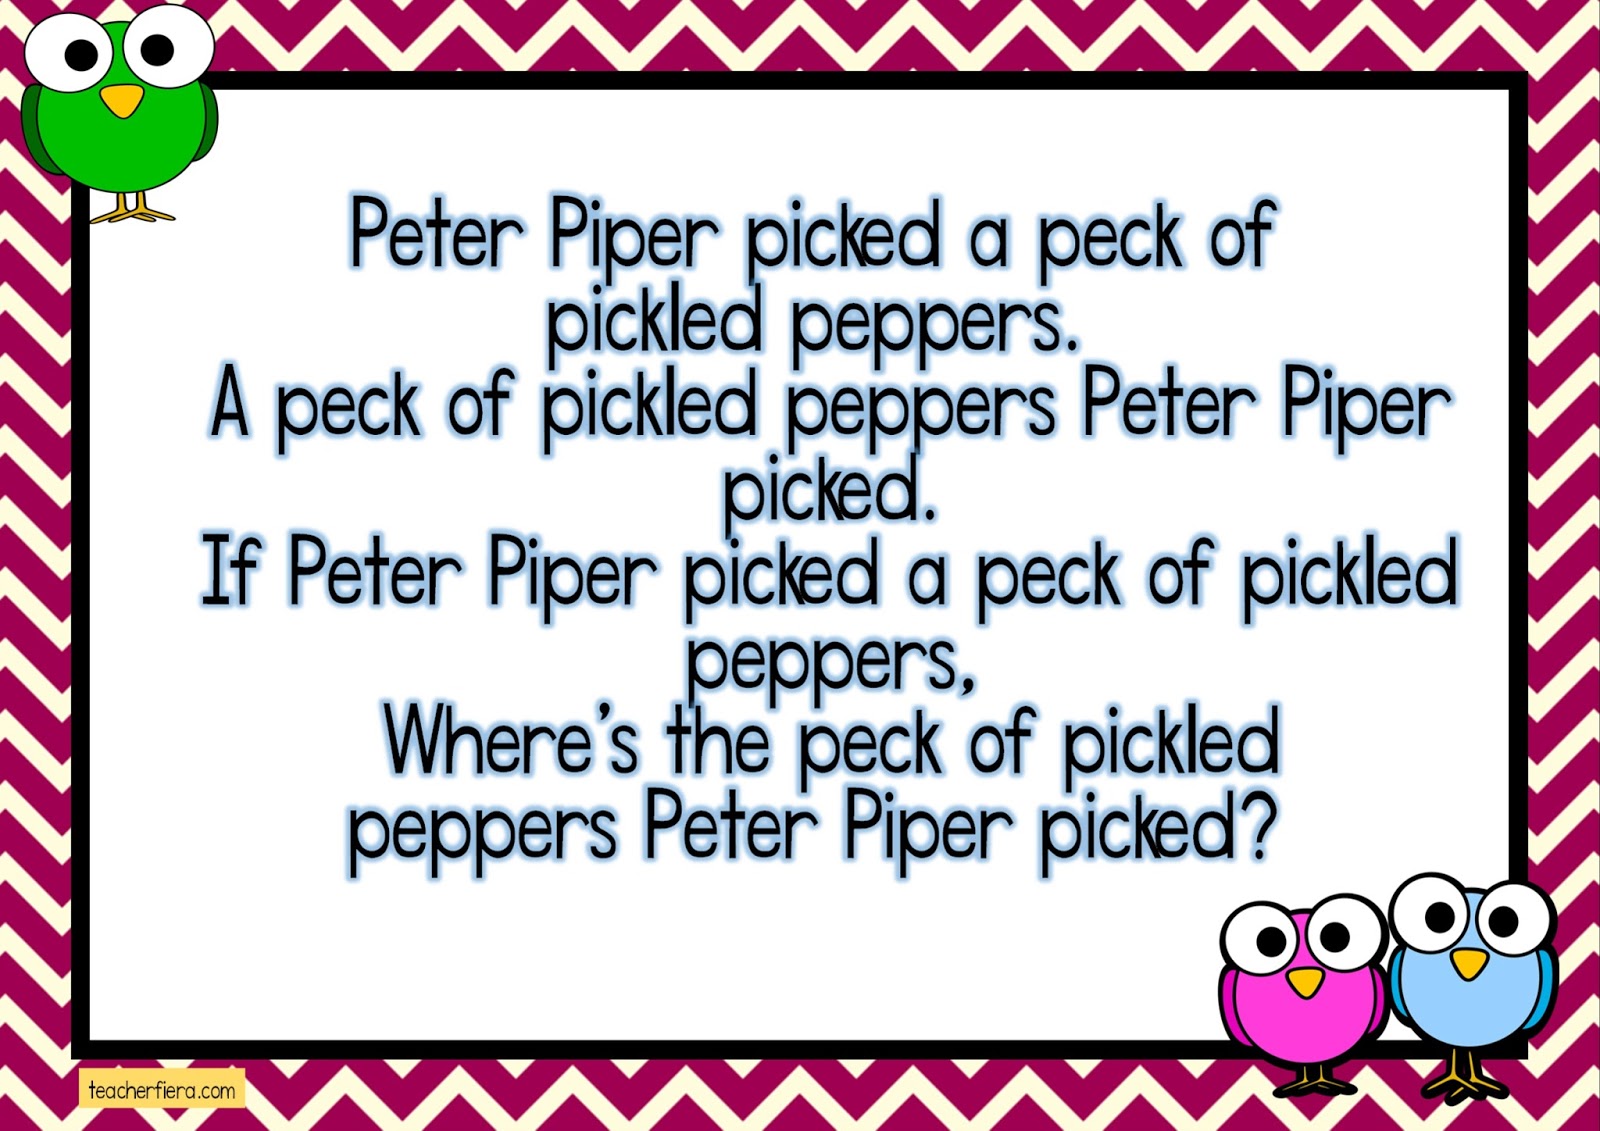 Скороговорка peter. Скороговорка Peter Piper. Peter Piper picked a Peck скороговорка. Скороговорка на английском Peter Piper. Скороговорка на английском Peter Piper picked.